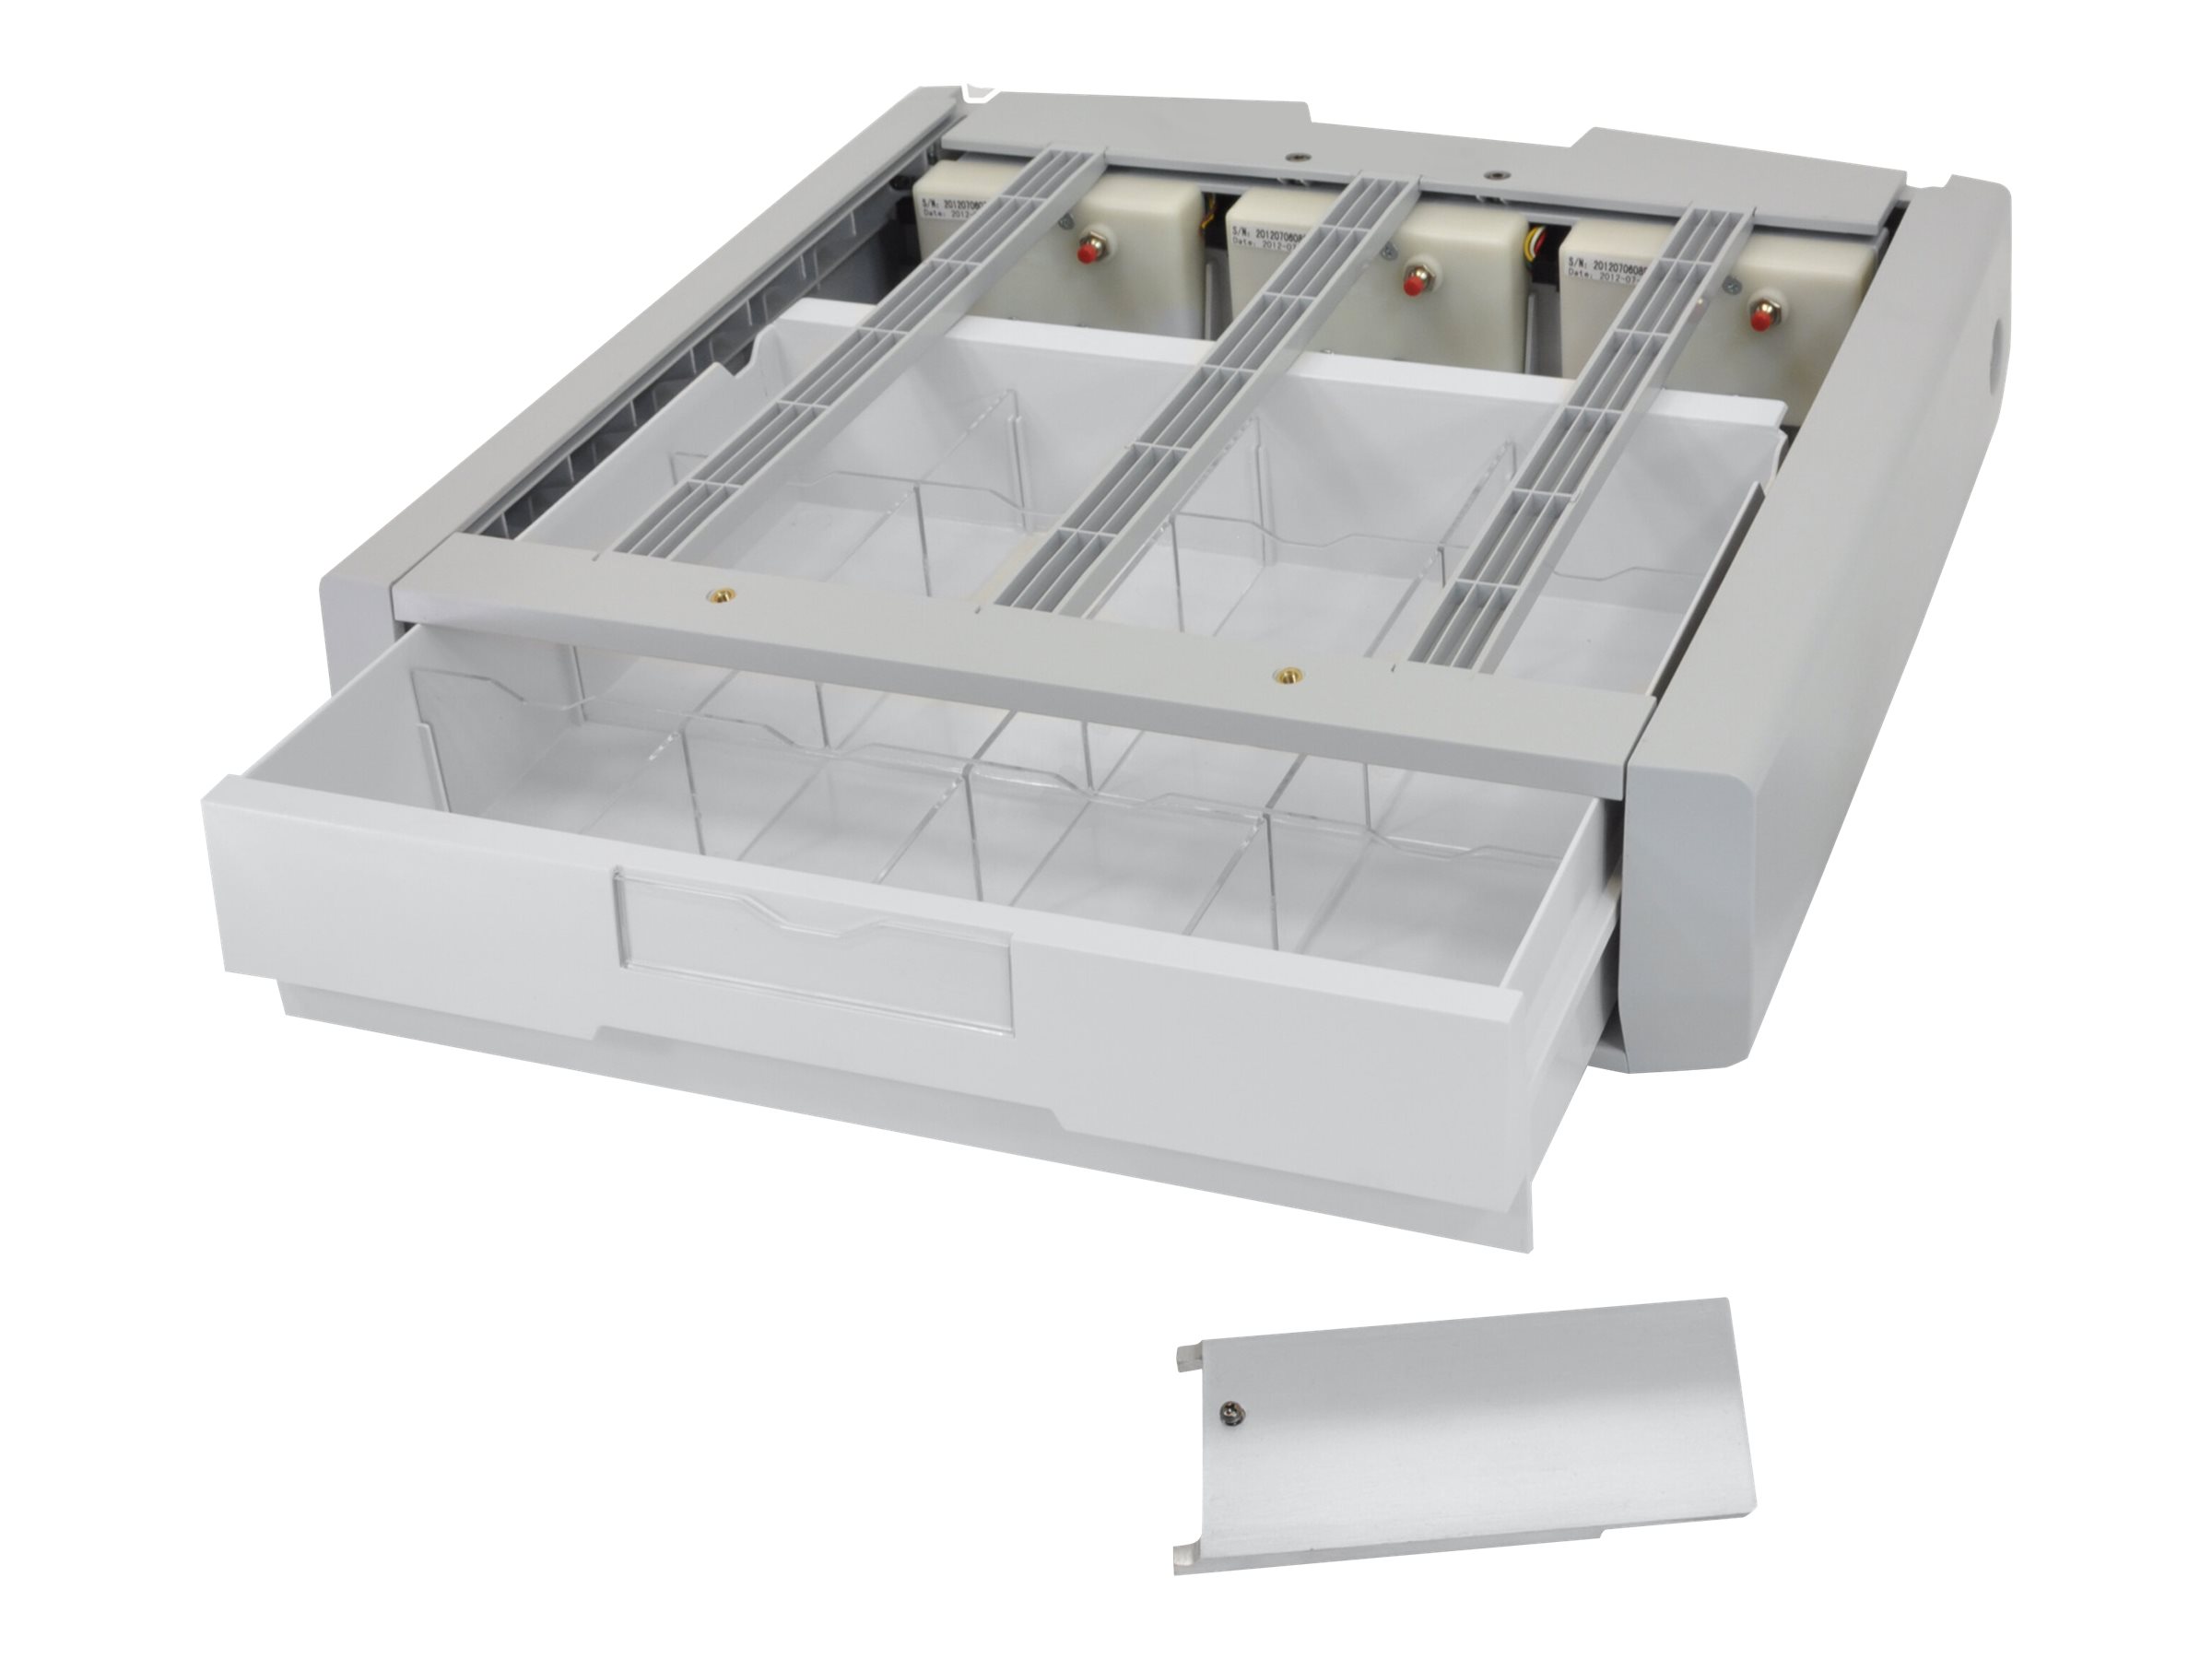 Ergotron Supplemental Storage Drawer, Single - Aufbewahrungsbox - Grau-Weiss - am Wagen montierbar